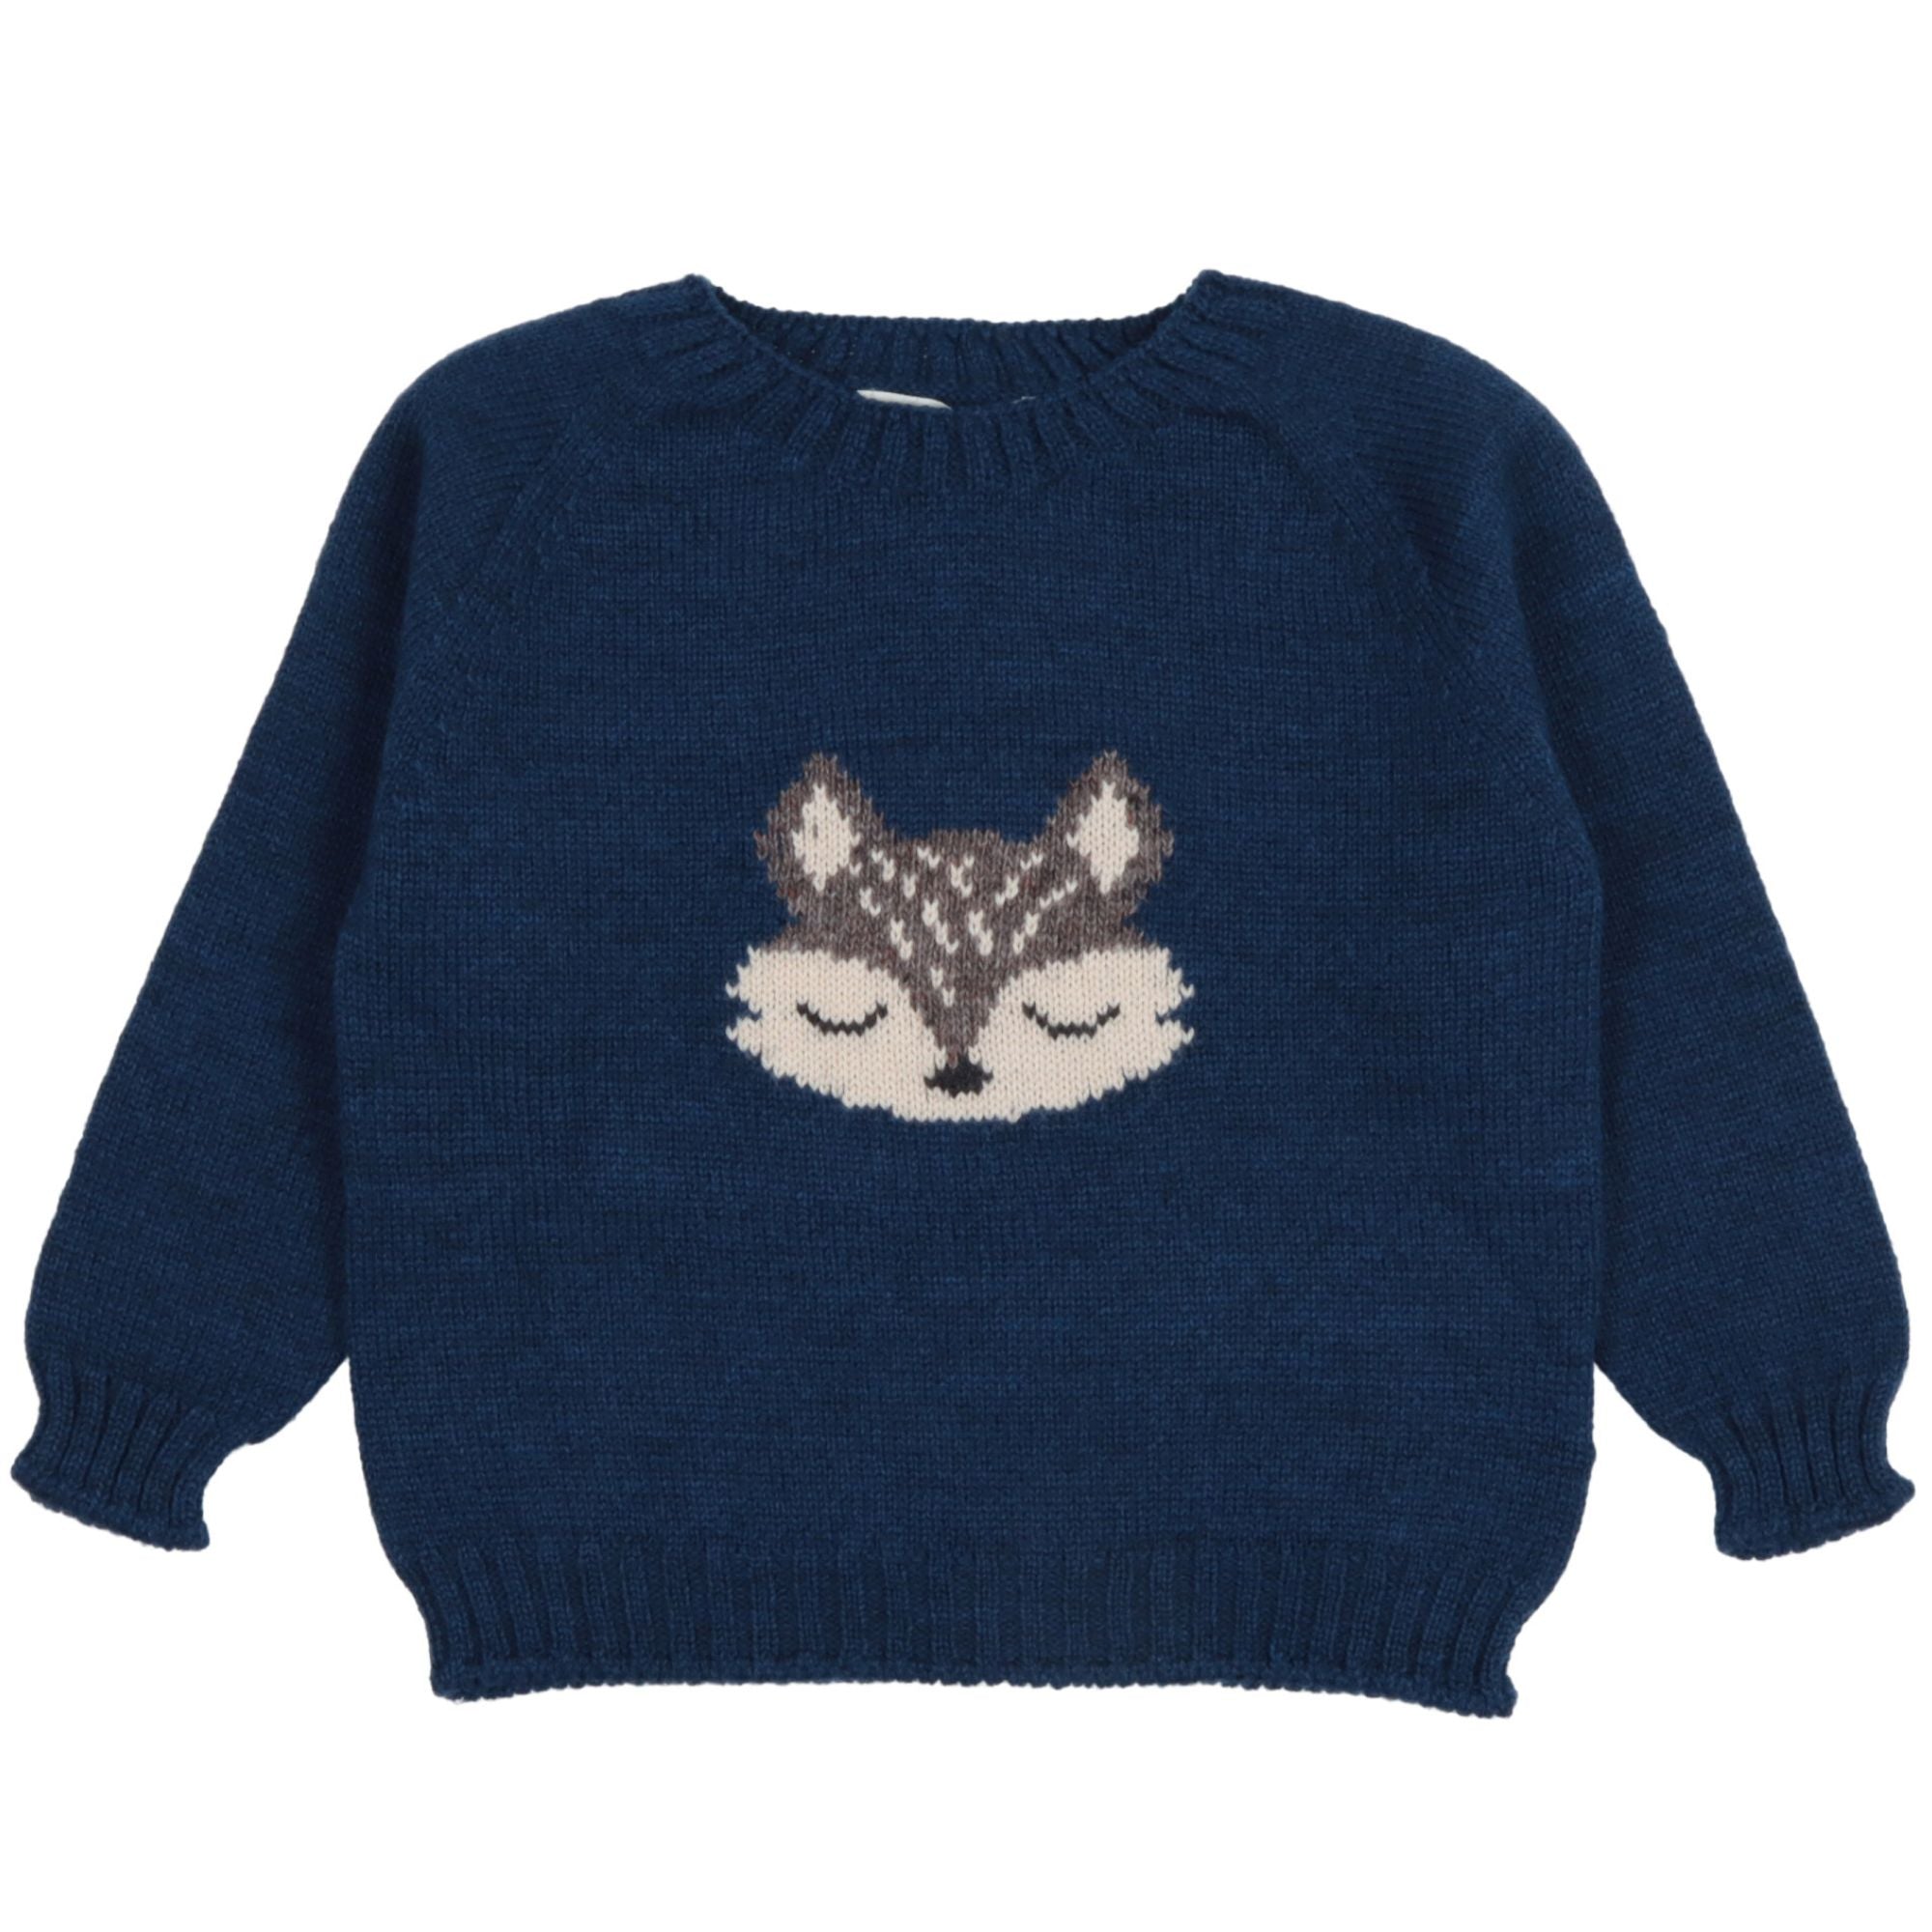 maglione-in-lana-colore-bluette-con-ricamo-per-bambino